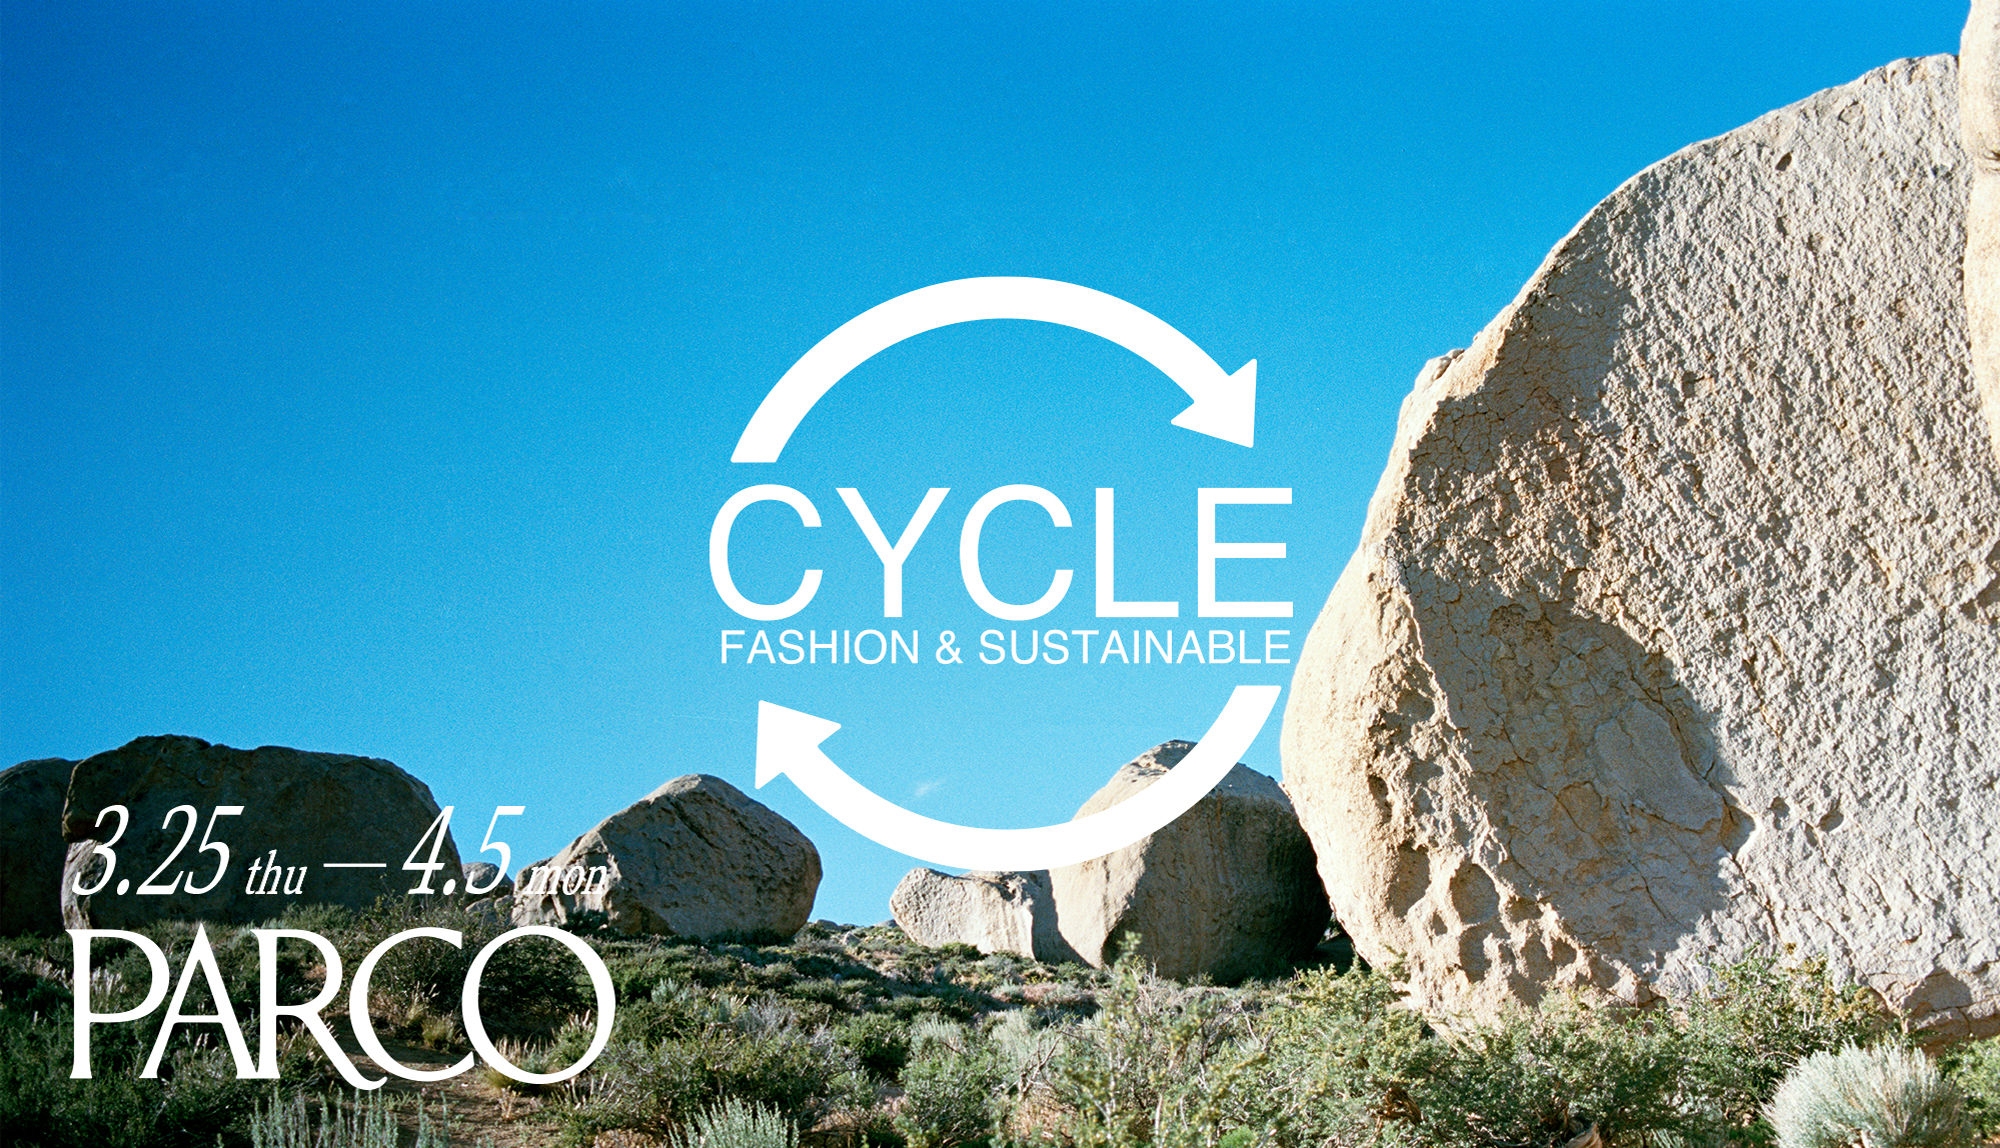 SUSTAINABLE FASHION CAMPAIGN “CYCLE”｜ “サスティナブル”は未来を変える “CYCLE”で探す、心地のよい「循環」のかたち